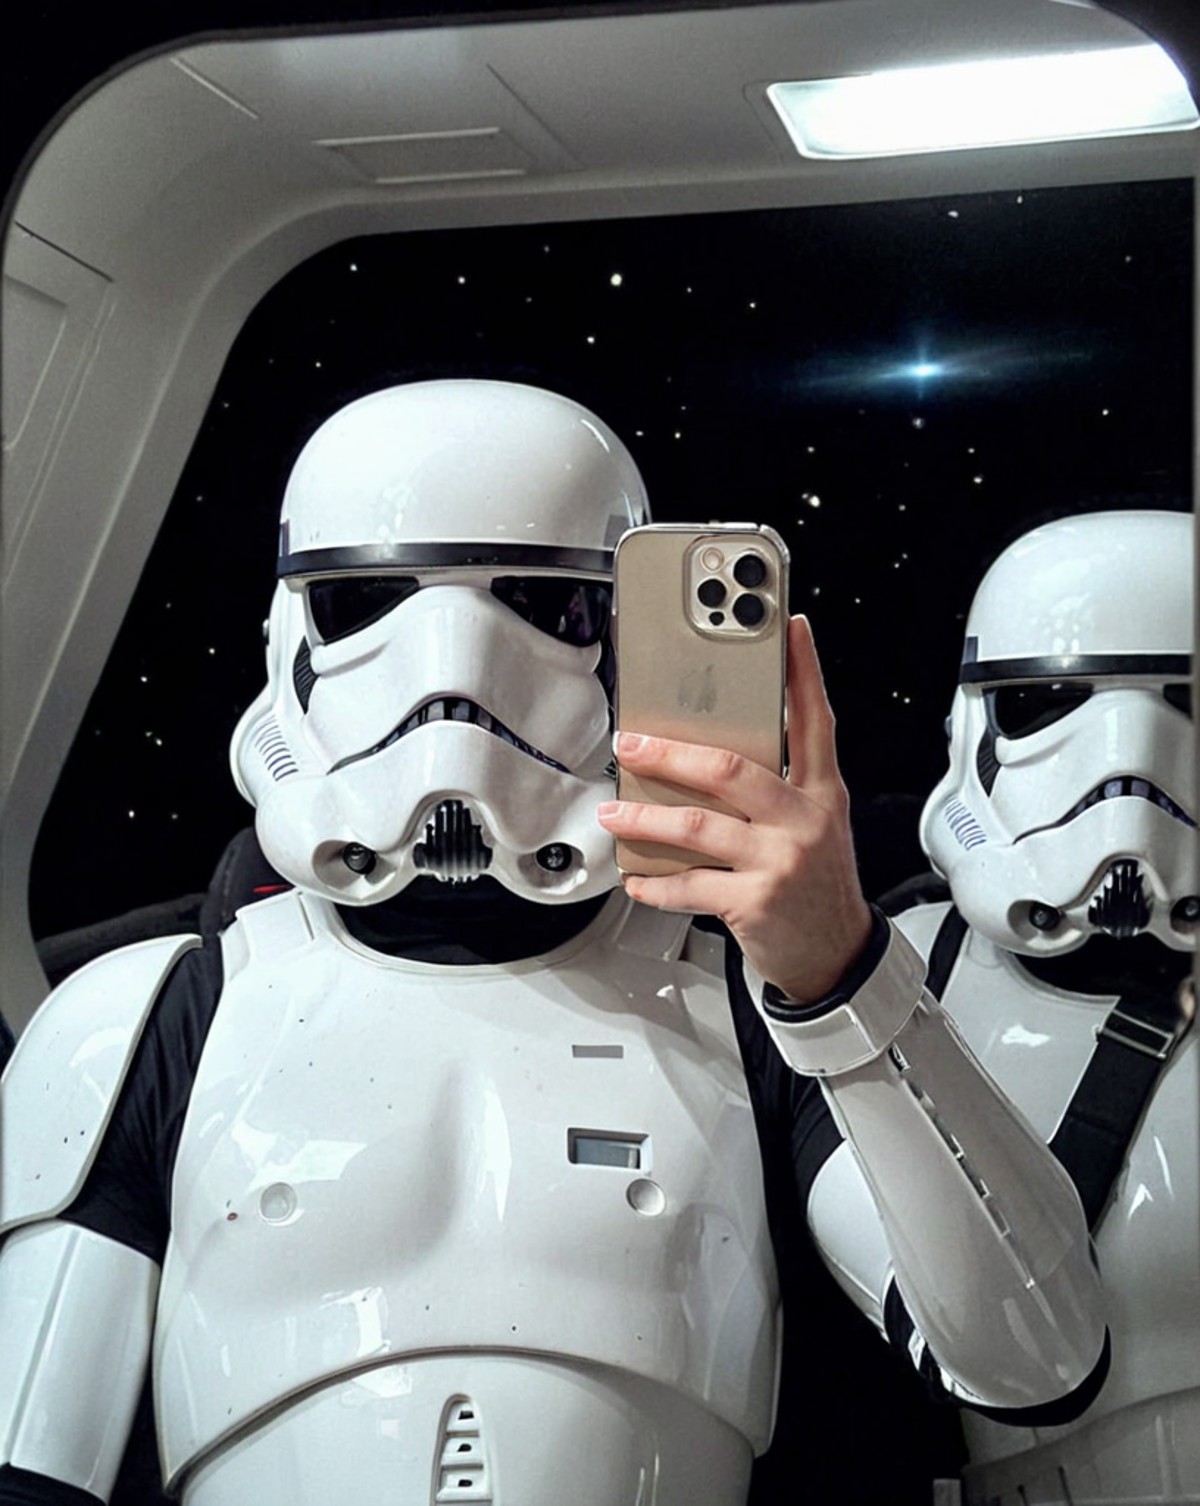 <lora:iphone_mirror_selfie_v01b:1>
((very grainy low resolution amateur:1.2))
 iphone mirror selfie
man wearing stormtroop...